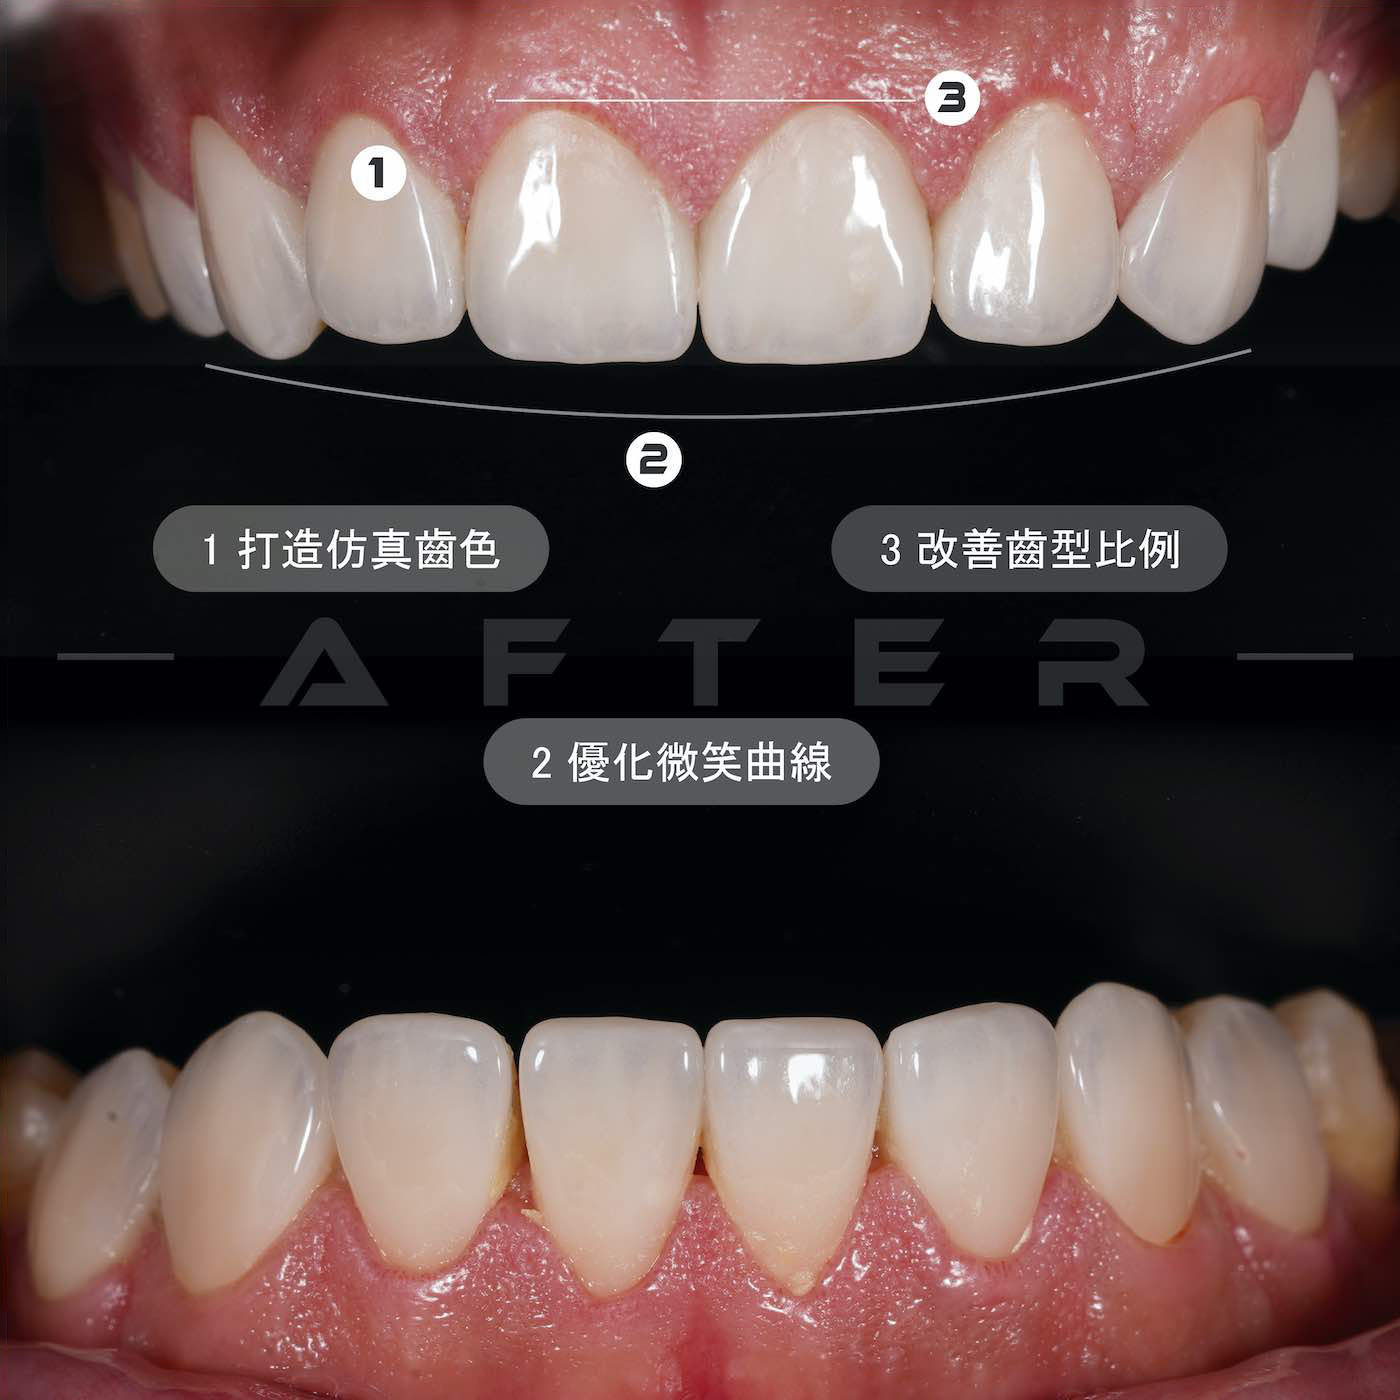 陶瓷貼片、水雷射牙冠增長術療程後上下排牙齒近照，牙齒變得白皙自然、改善齒型比例，微笑曲線更完美